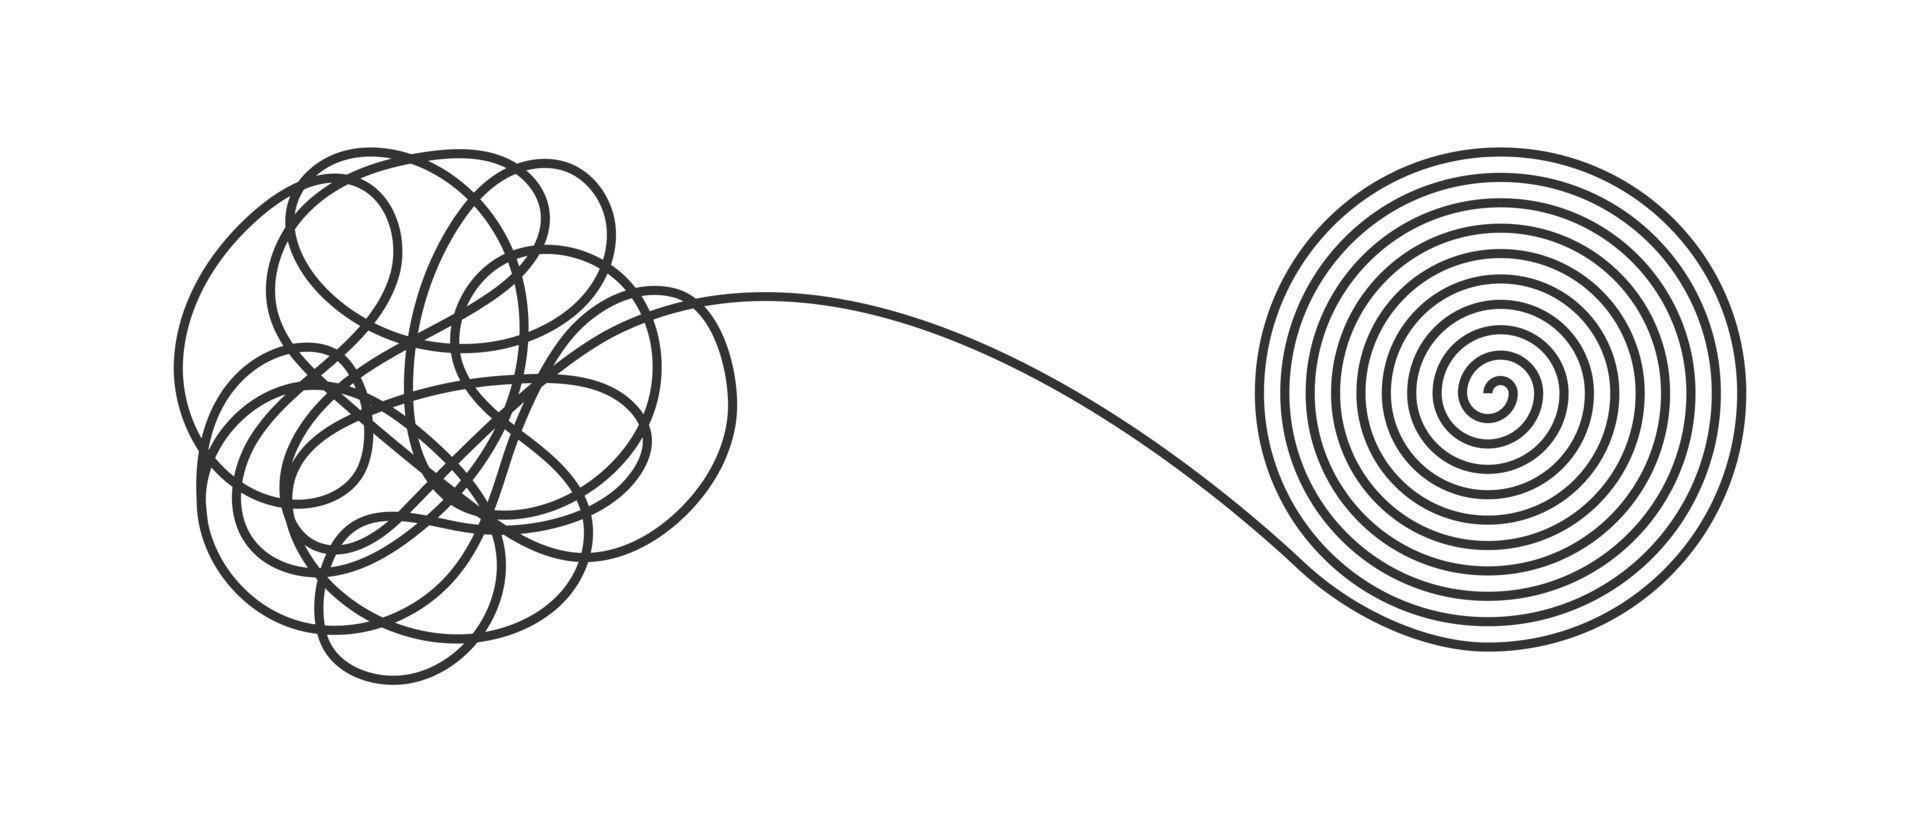 Design-Vektorillustration des Chaos und des Ordnungsgeschäftskonzeptes flache Art lokalisiert auf weißem Hintergrund. vektor